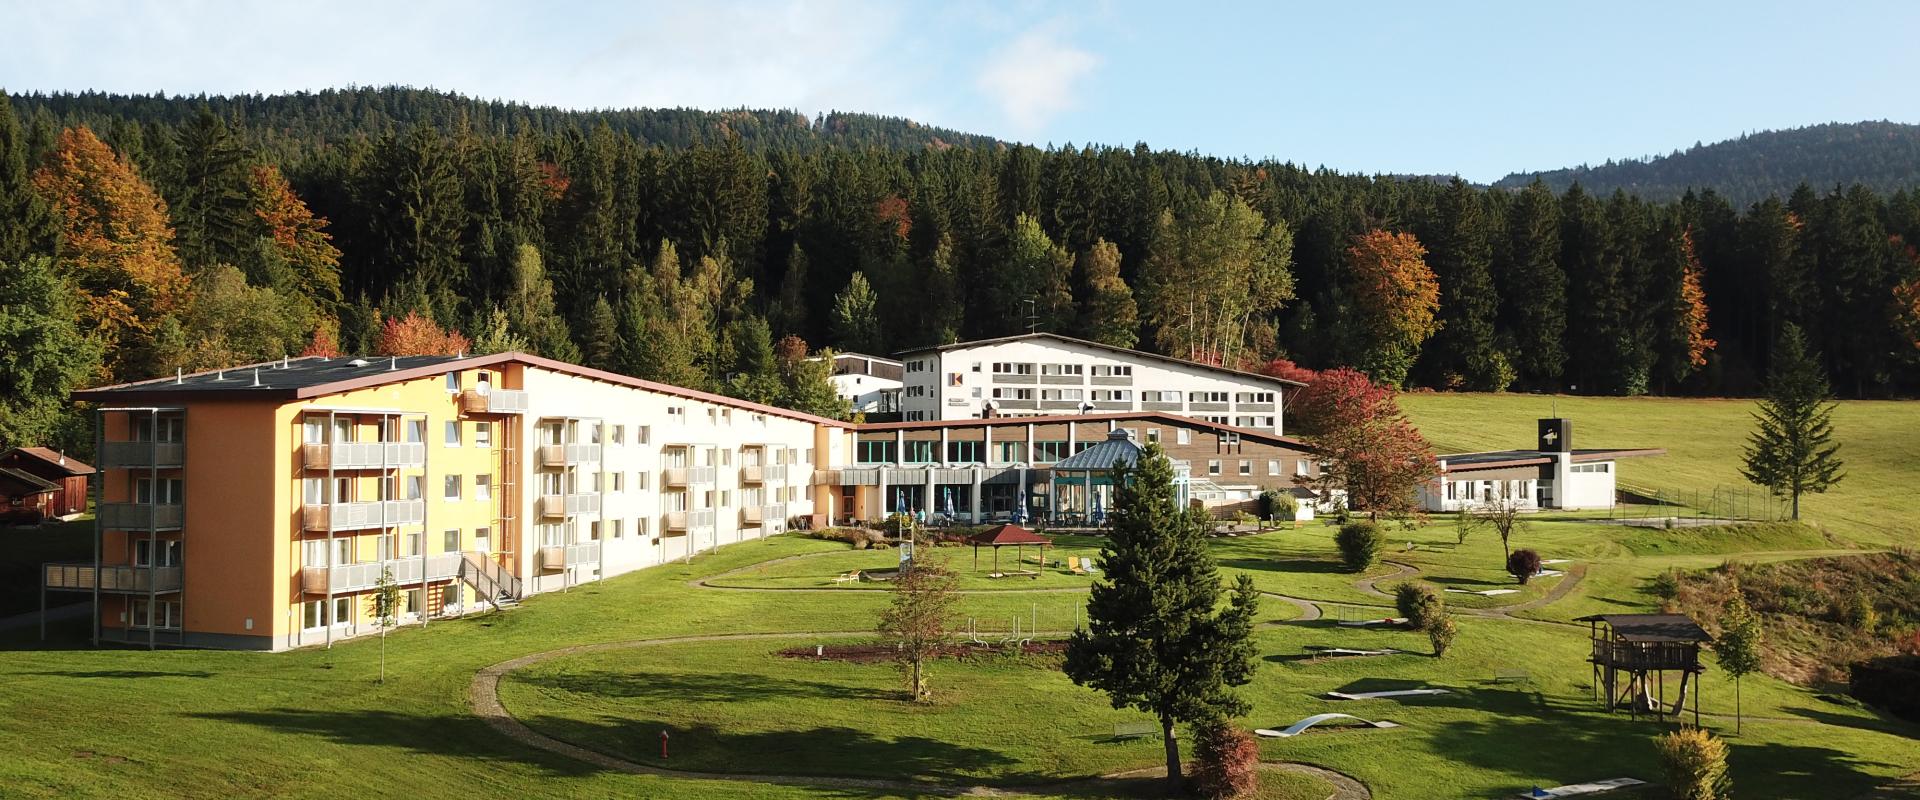 16285 Biker Hotel Haus Bayerischer Wald im Bayerischen Wald.JPG